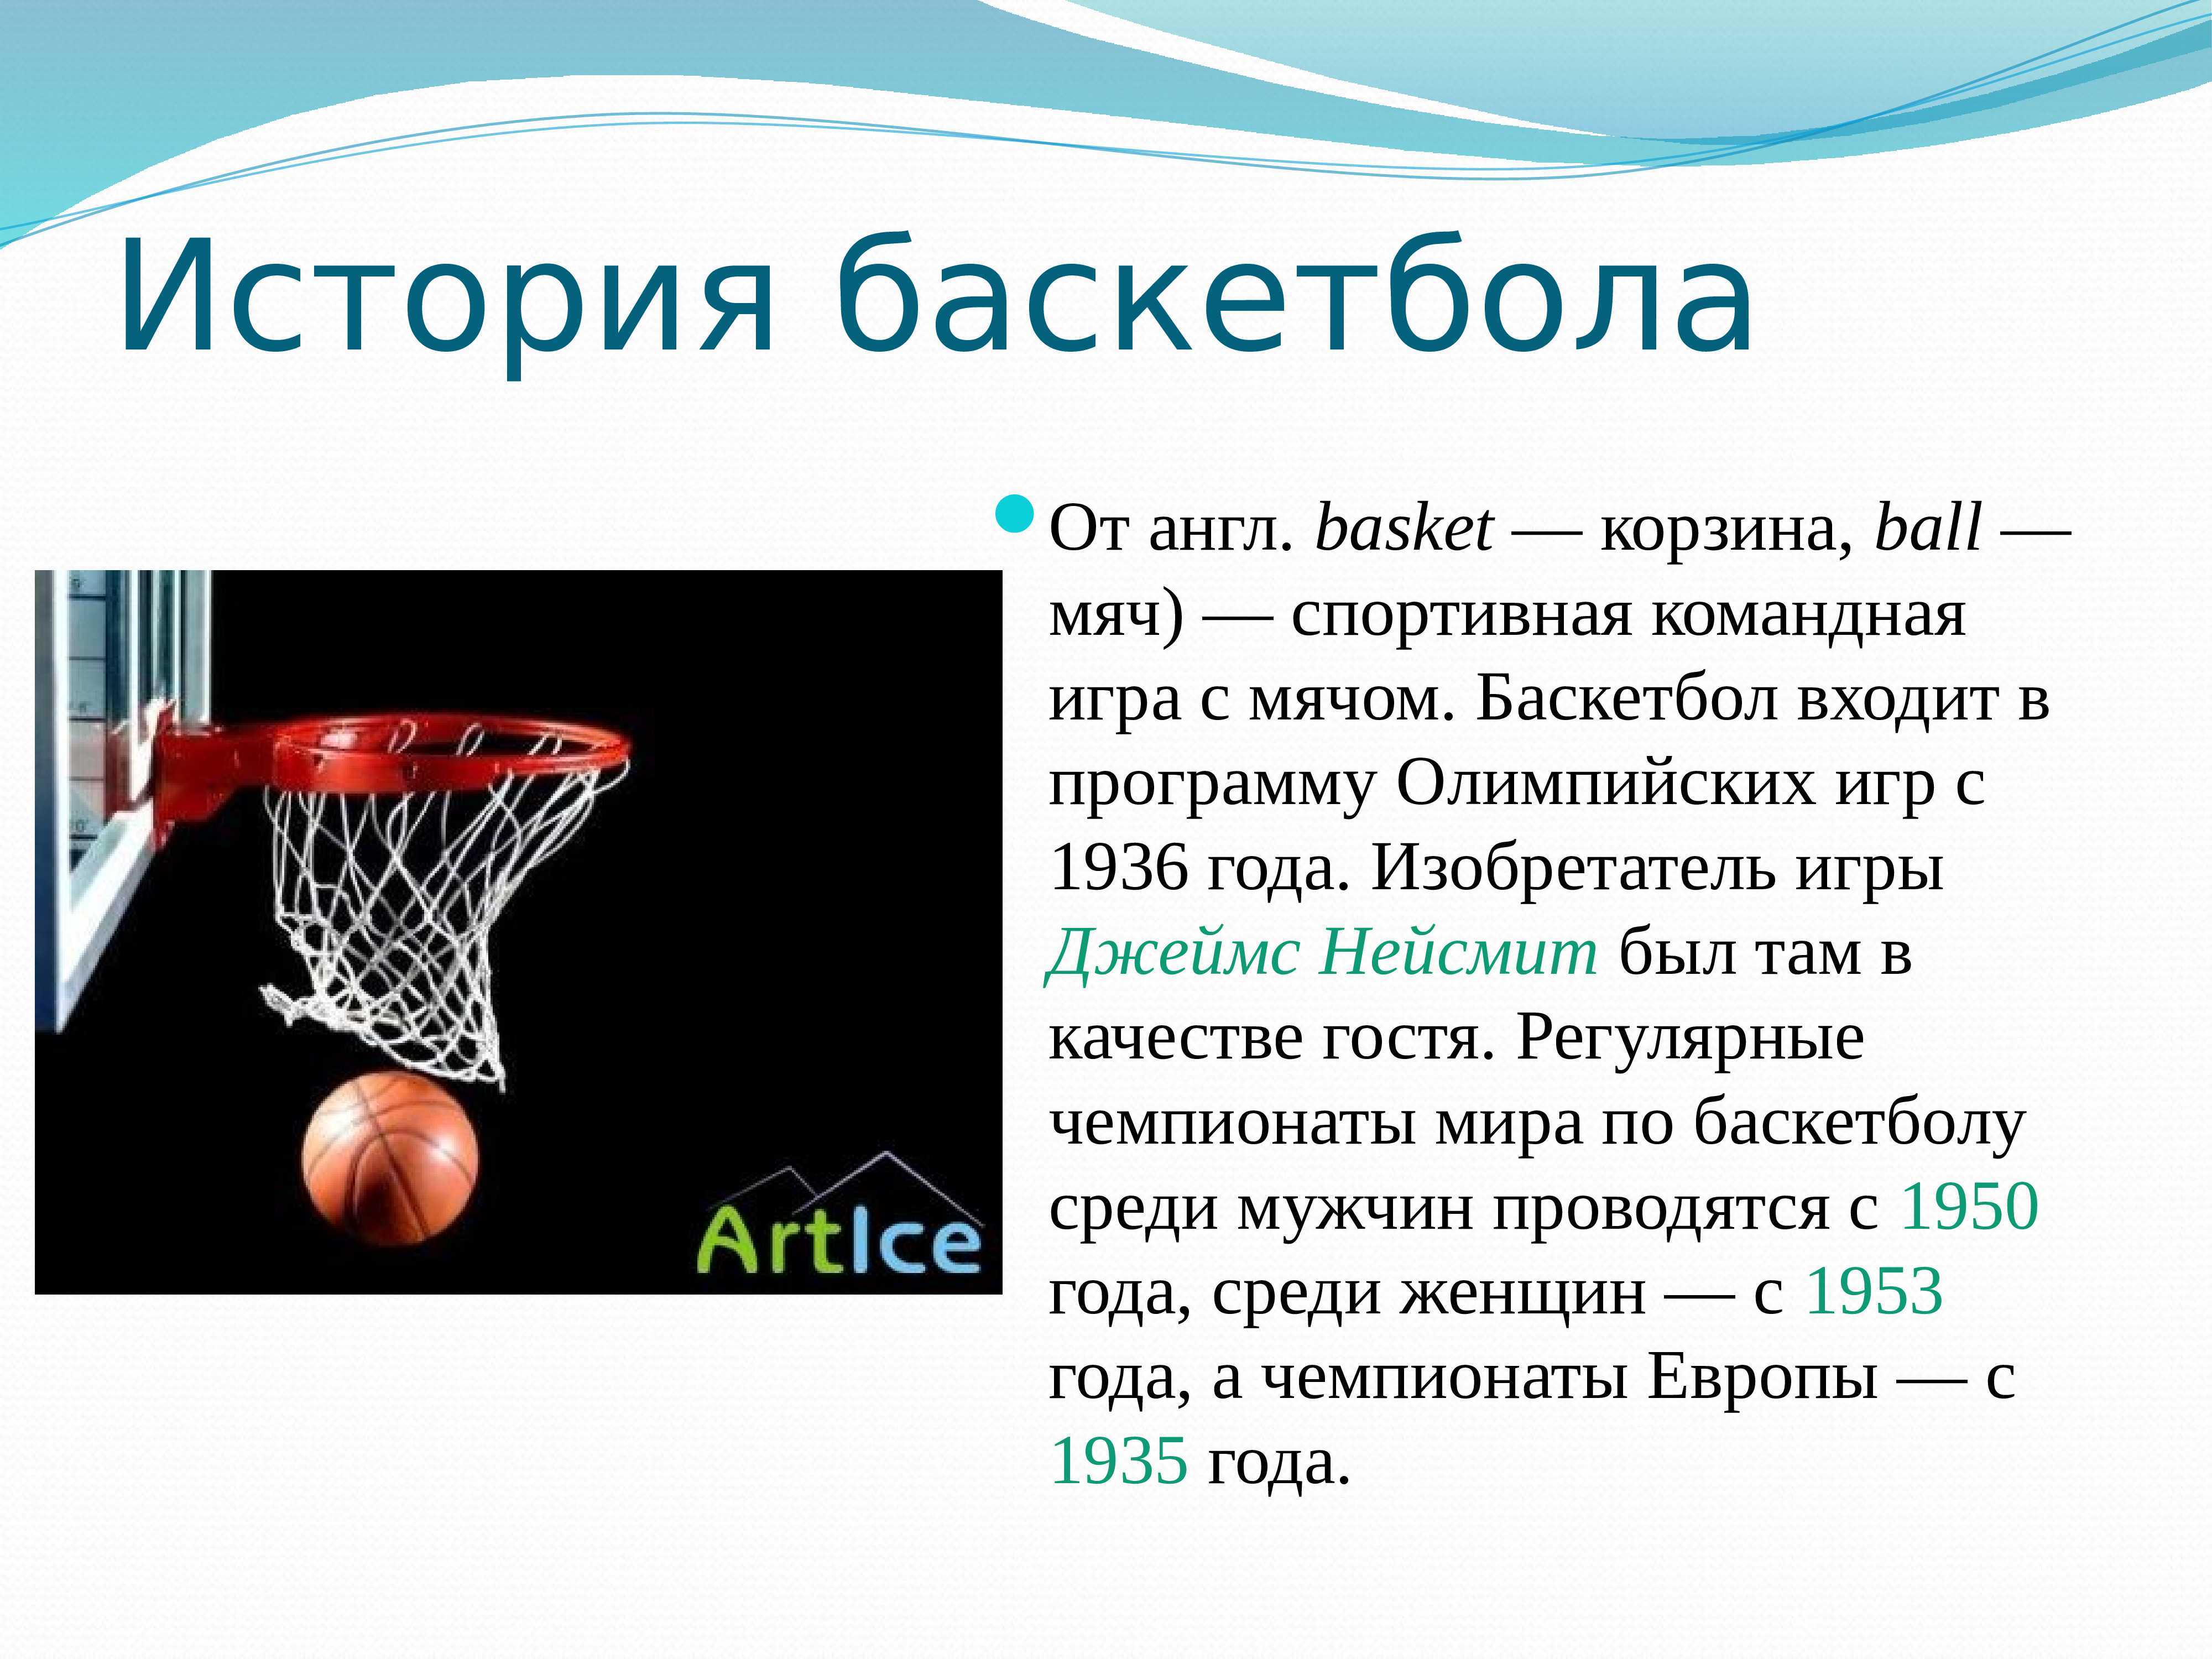 Реферат по дисциплине баскетбол (наименование дисциплины) тема реферата история и правила игры в минибаскетбол